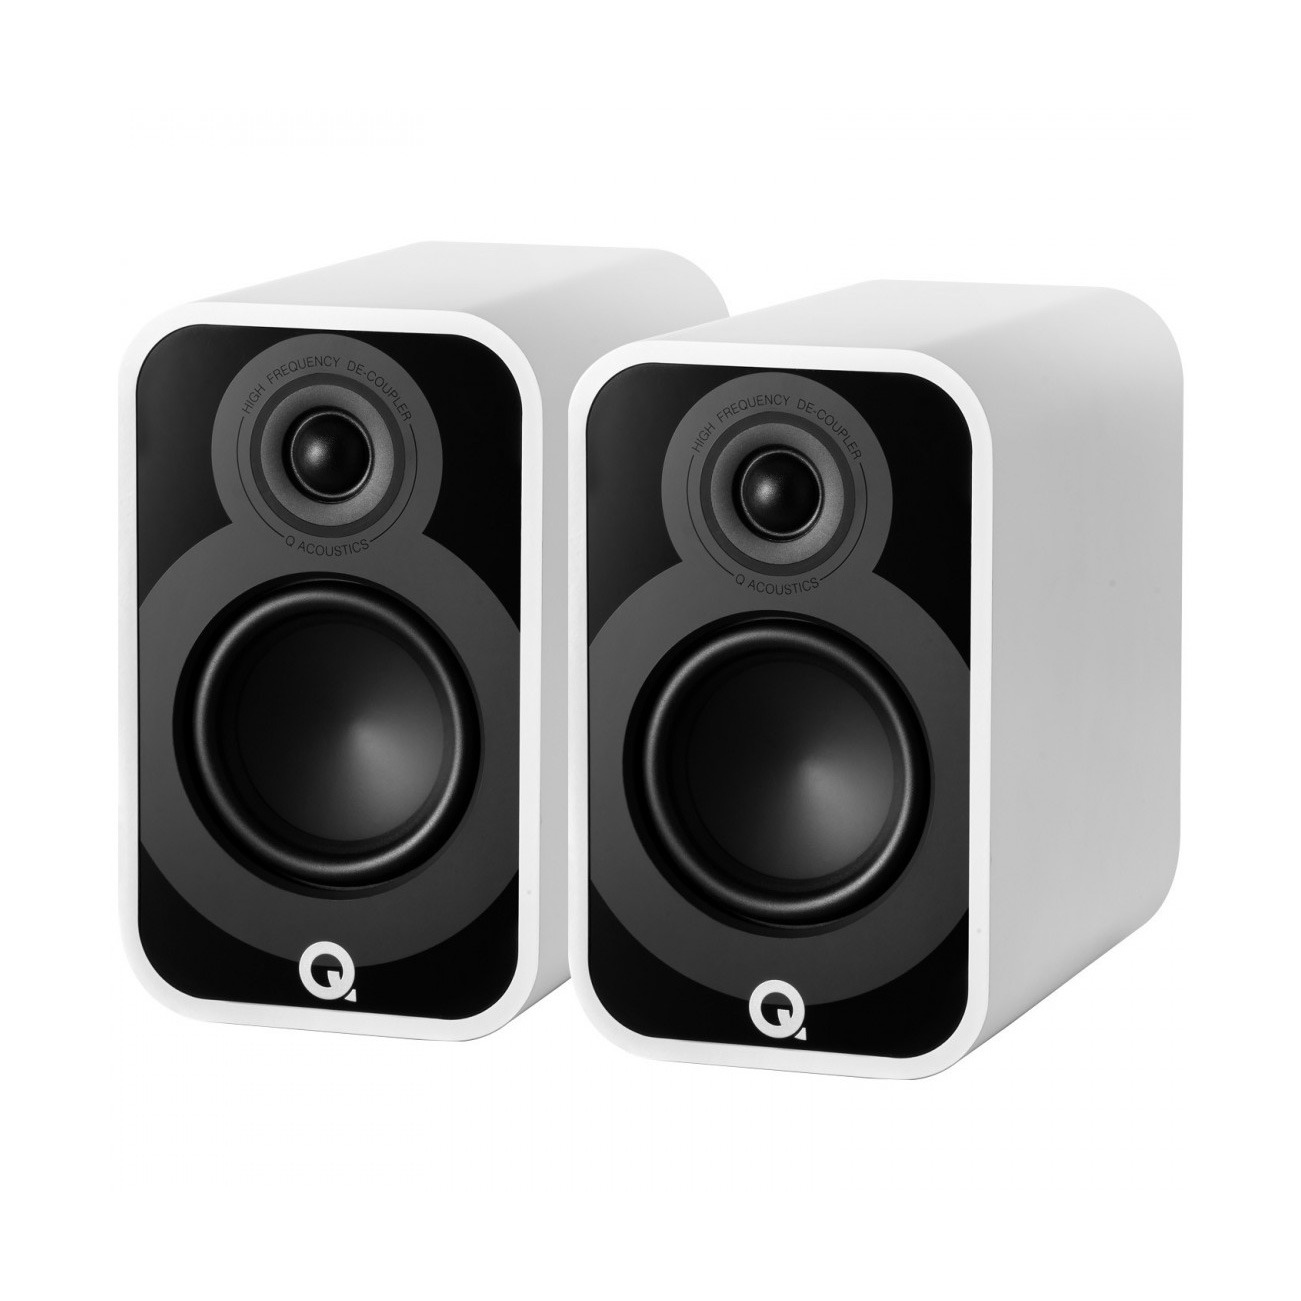 Полочная акустика Q-Acoustics Q5020 (QA5024) Satin White полочная акустика q acoustics q 5010 qa5016 rosewood